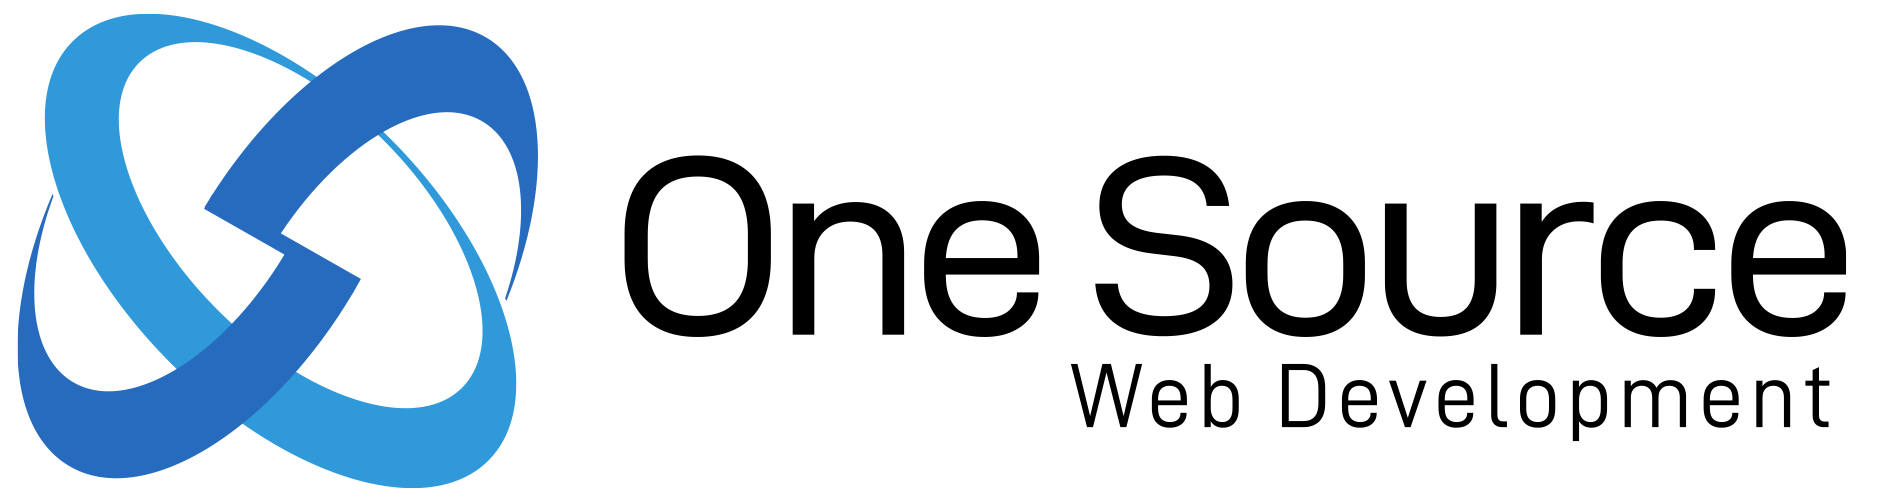 One Source Web Dev Logo